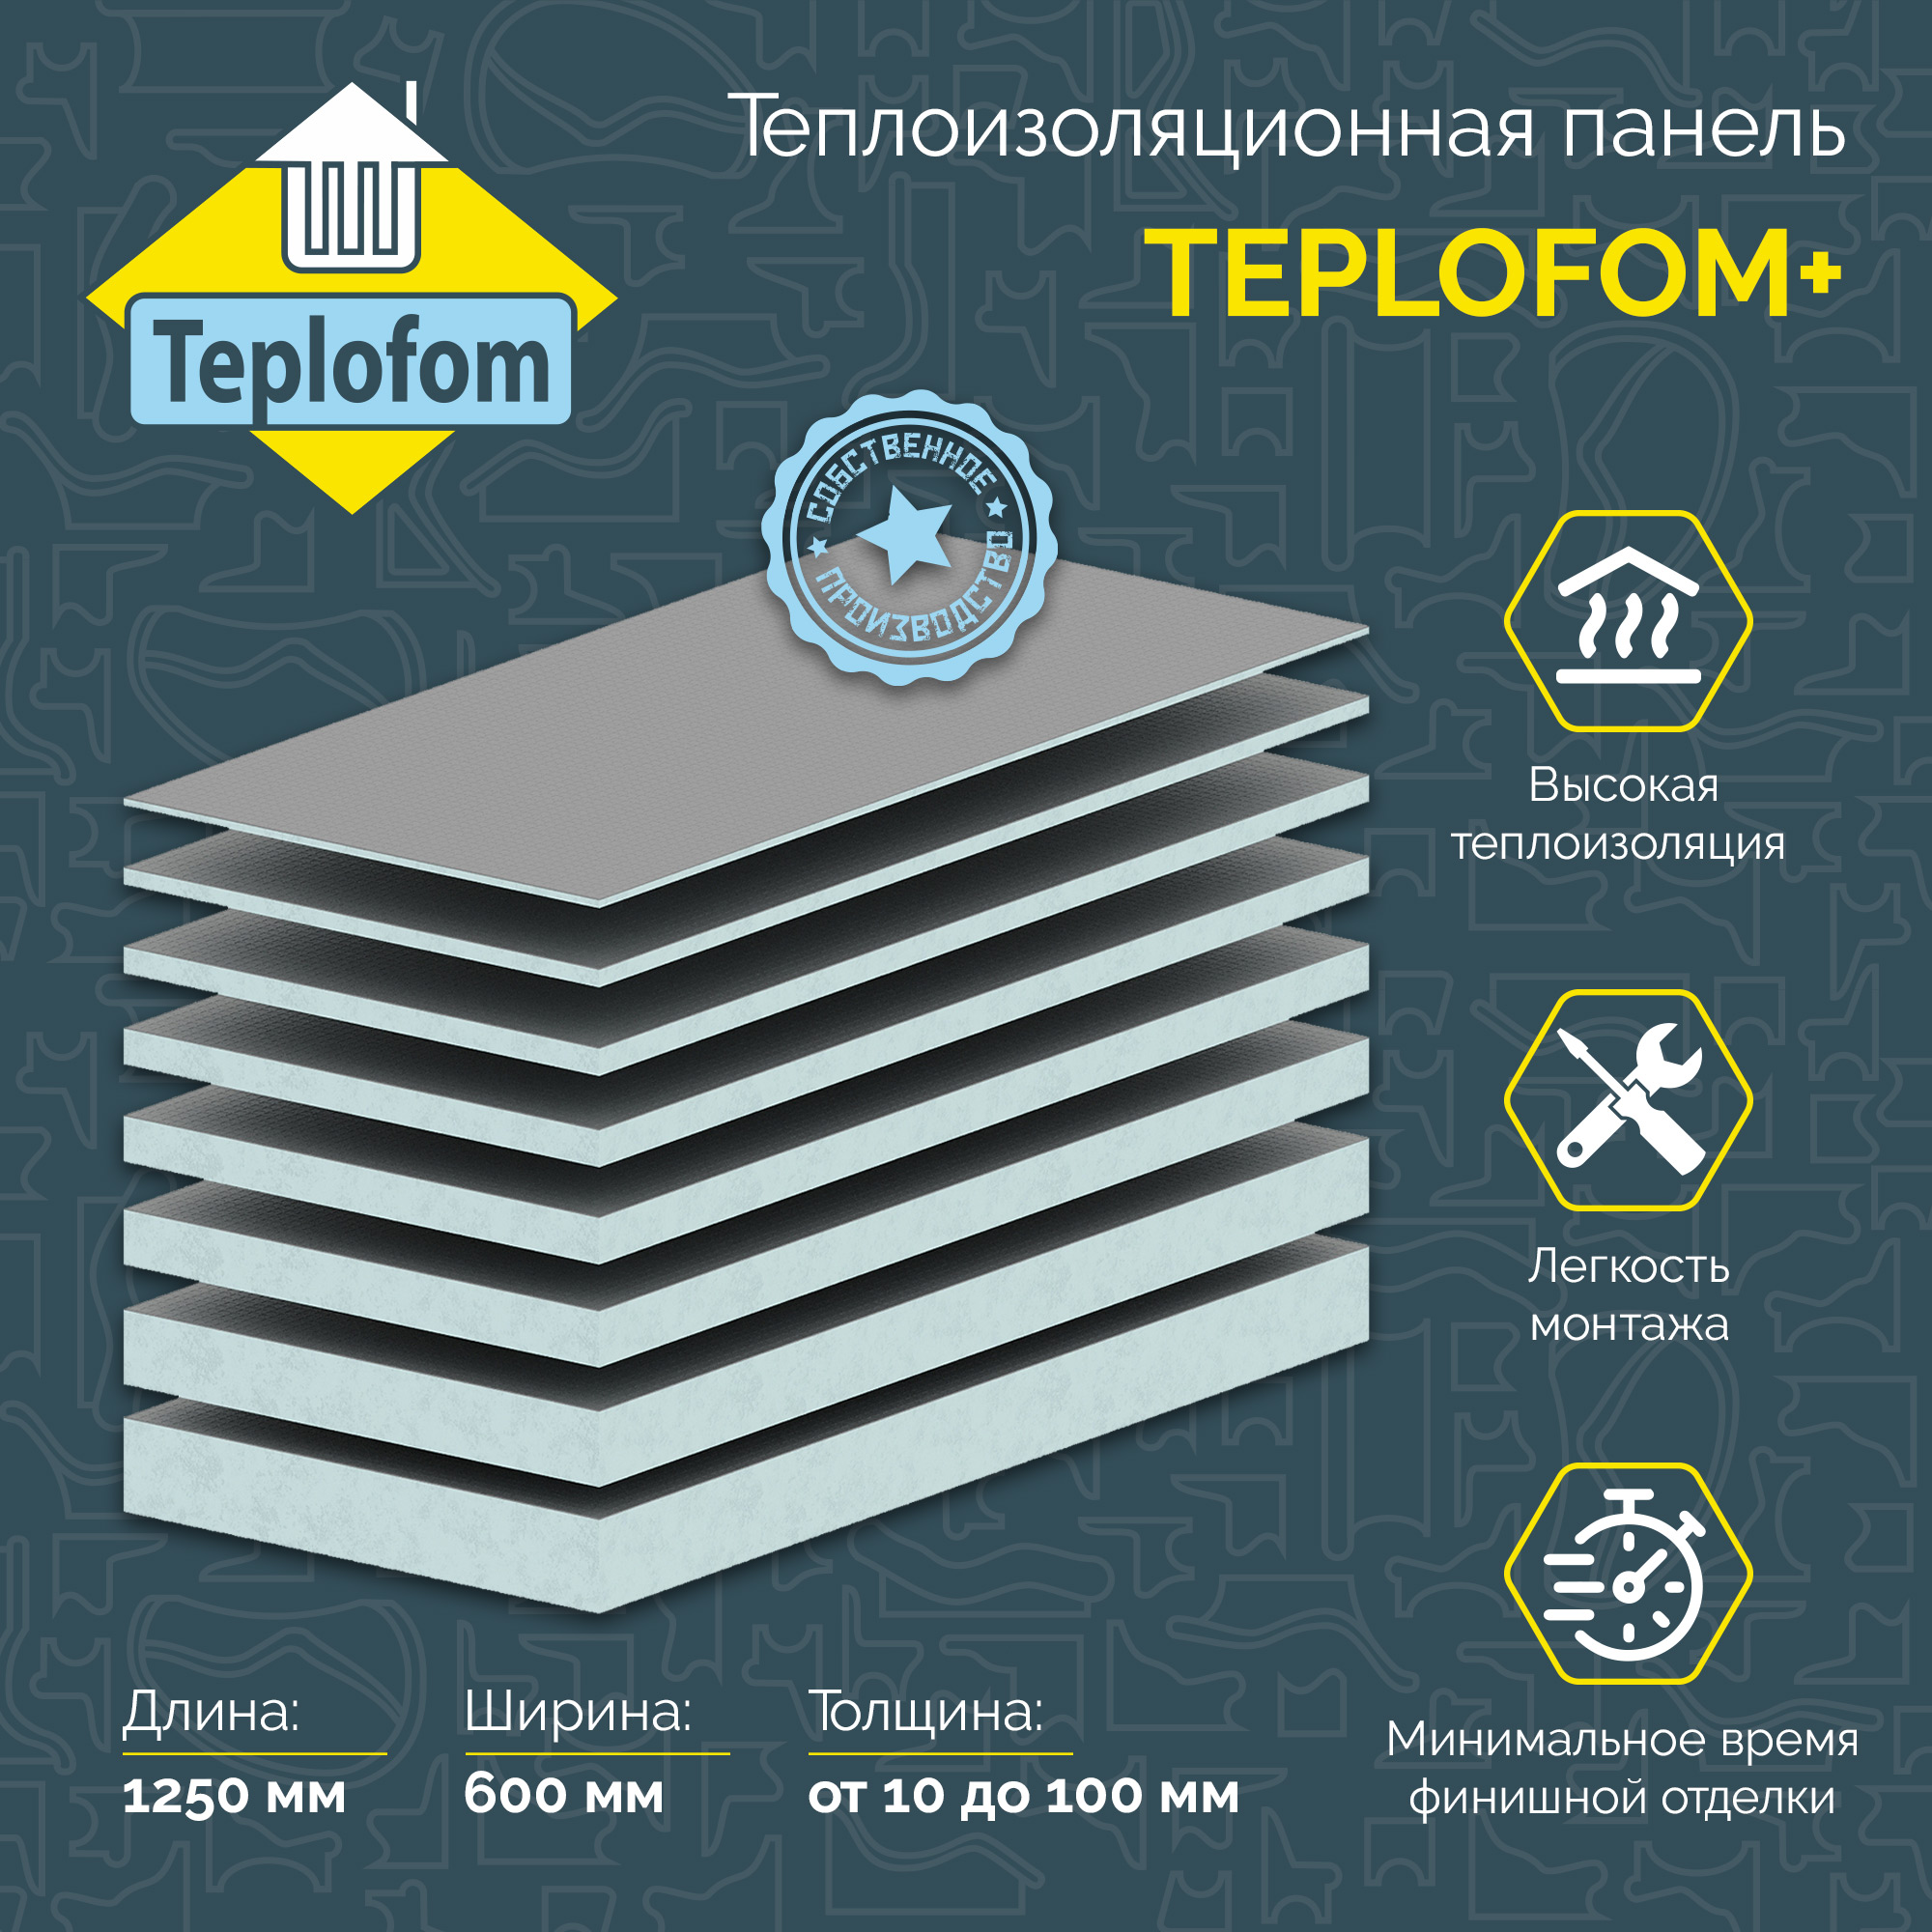 Теплоизоляционная панель TEPLOFOM+100 XPS-02 1250x600x100мм (двухсторонний слой) теплоизоляционная панель ruspanel basic 1250х600х30 мм с односторонним армированием